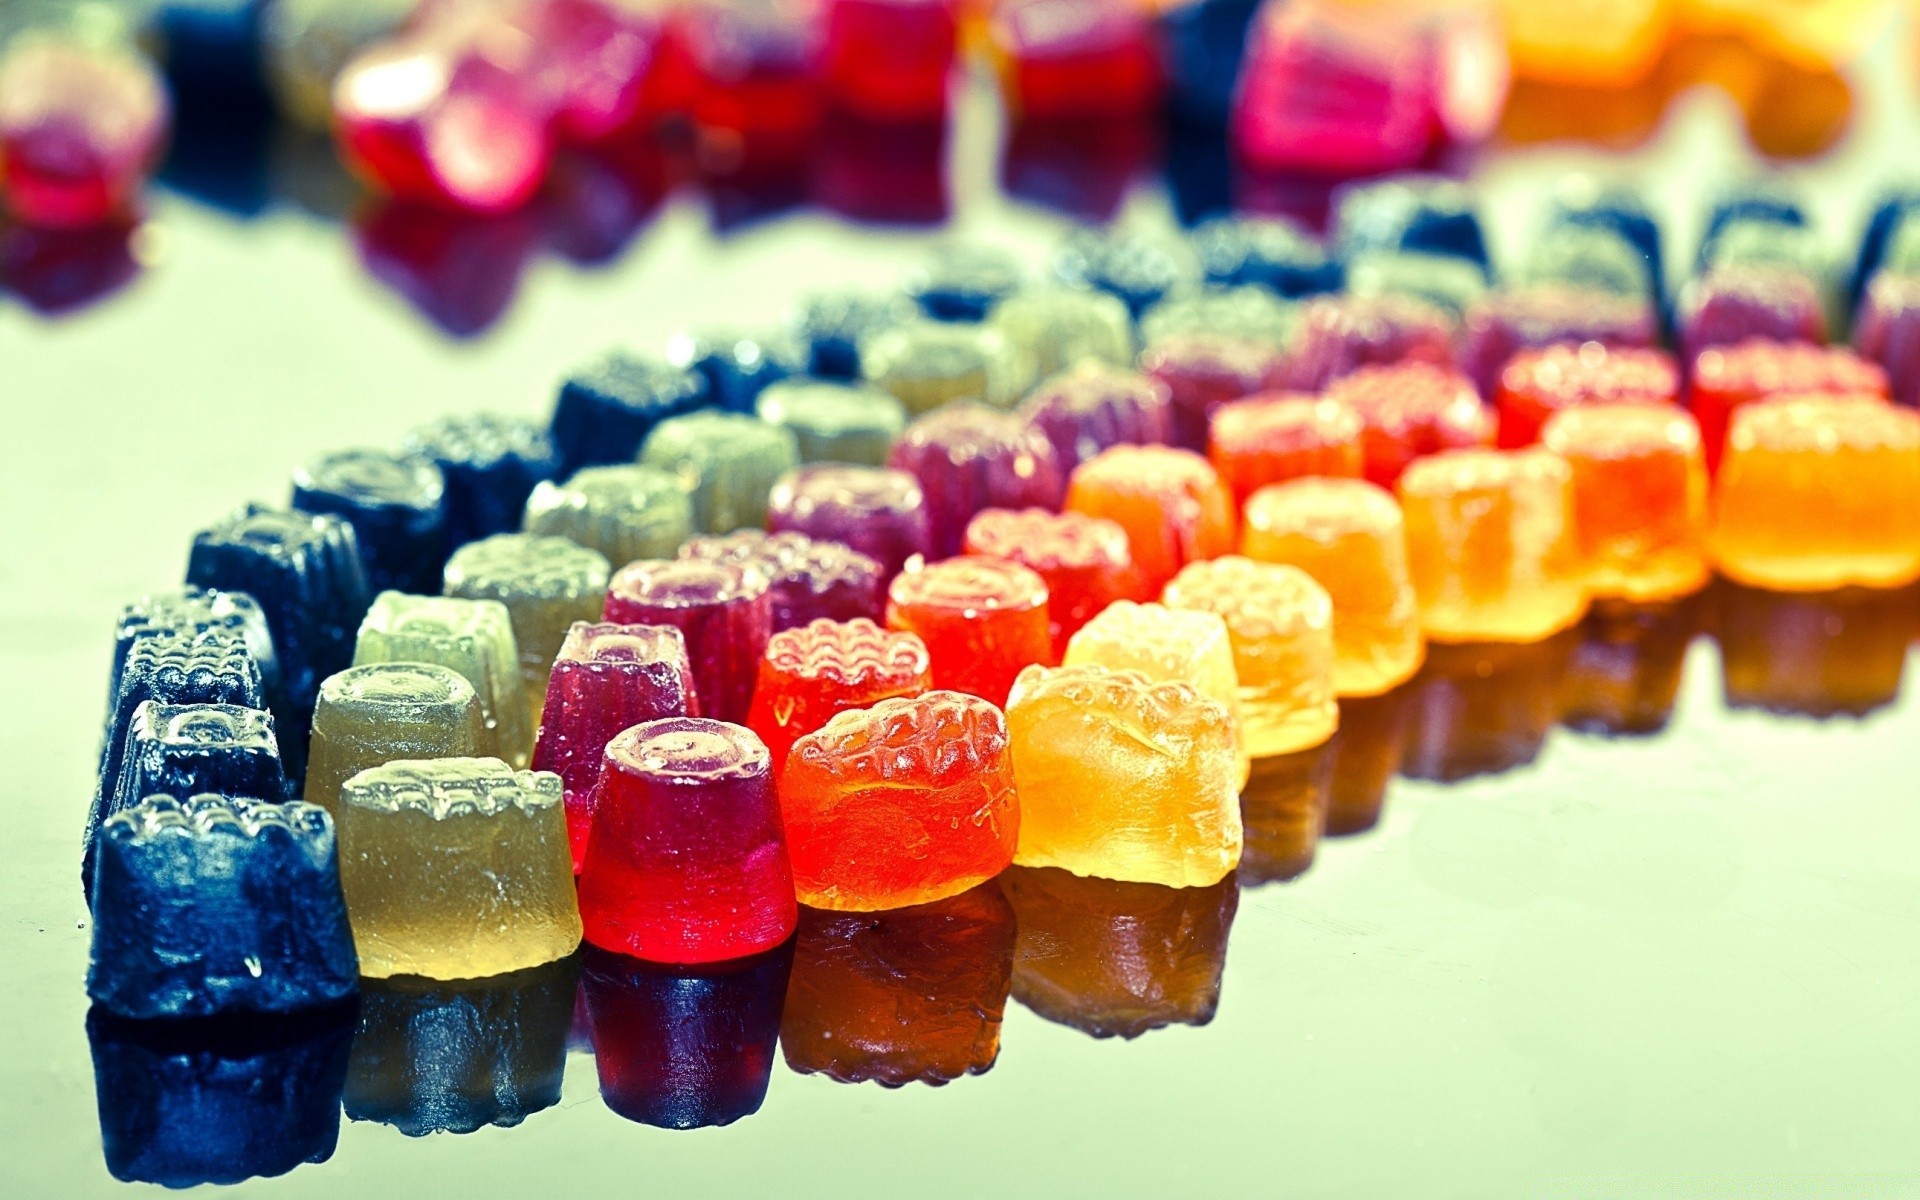 food & drink candy food kind sugar color motley desktop gelatin delicious confection close-up